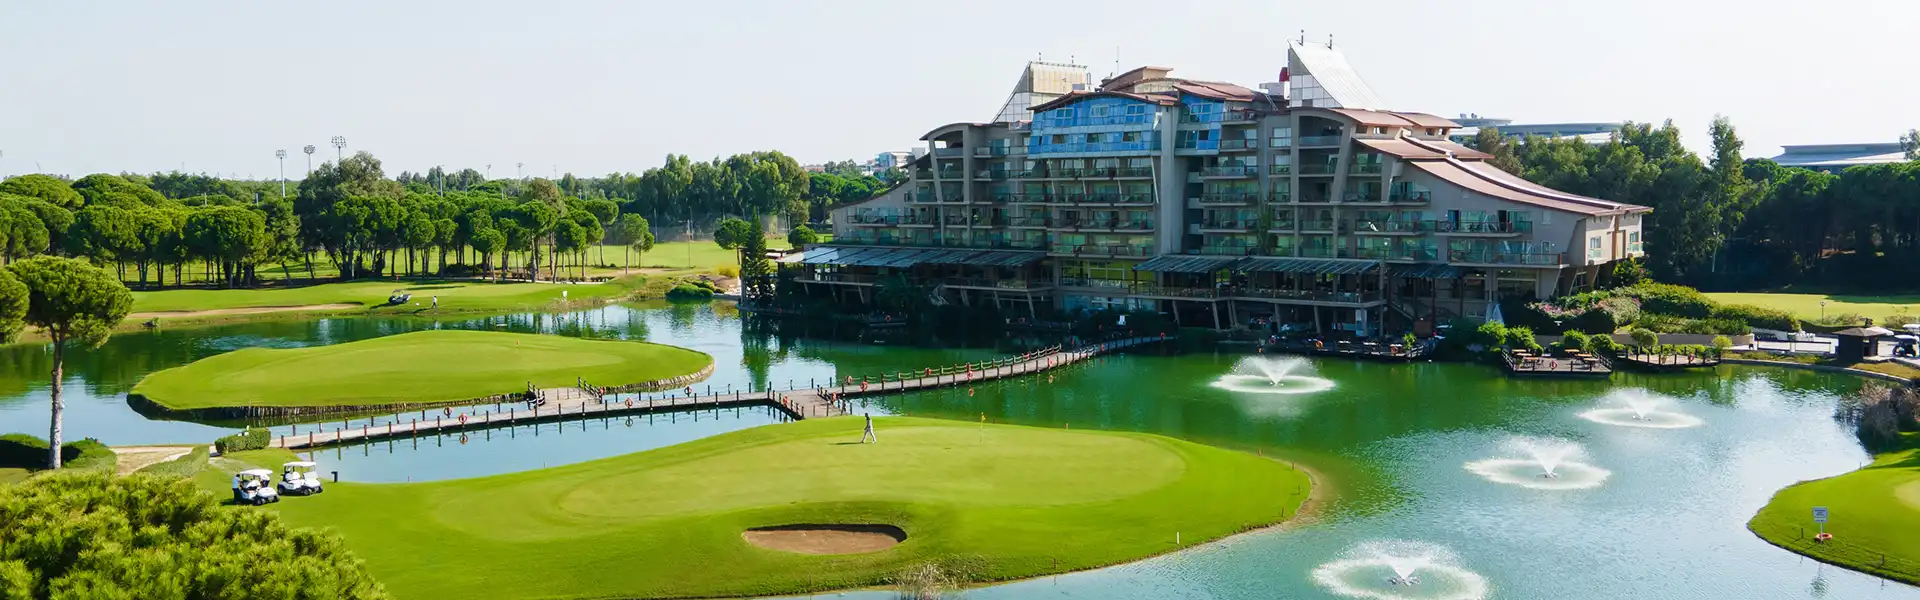 Bilyana Golf-Sueno Hotels Golf, Belek